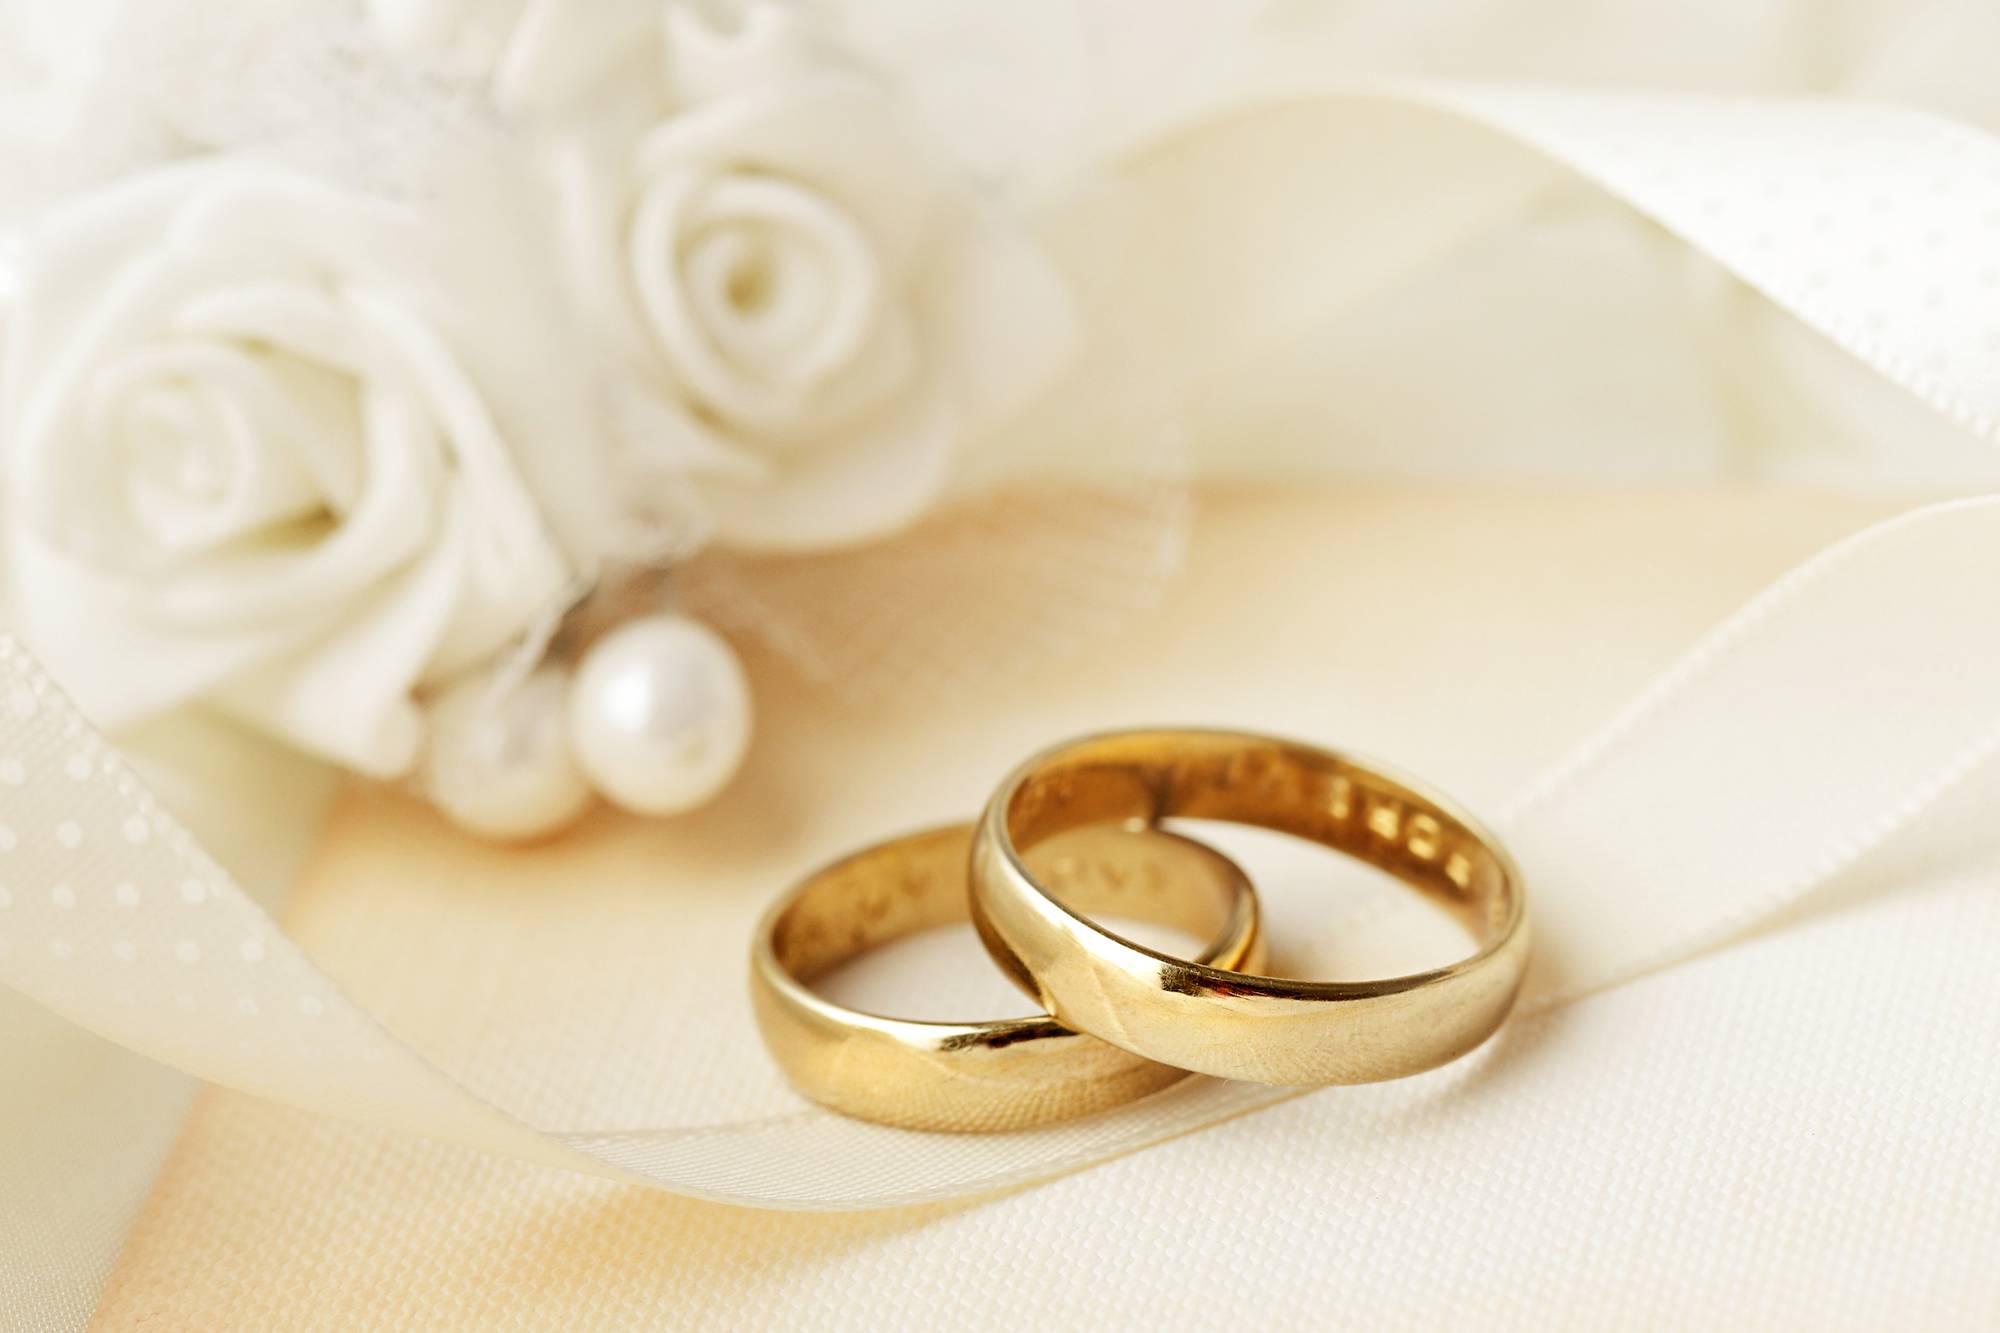 Что подарить на 37 лет свадьбы: оригинальная подборка идей на муслиновую свадьбу